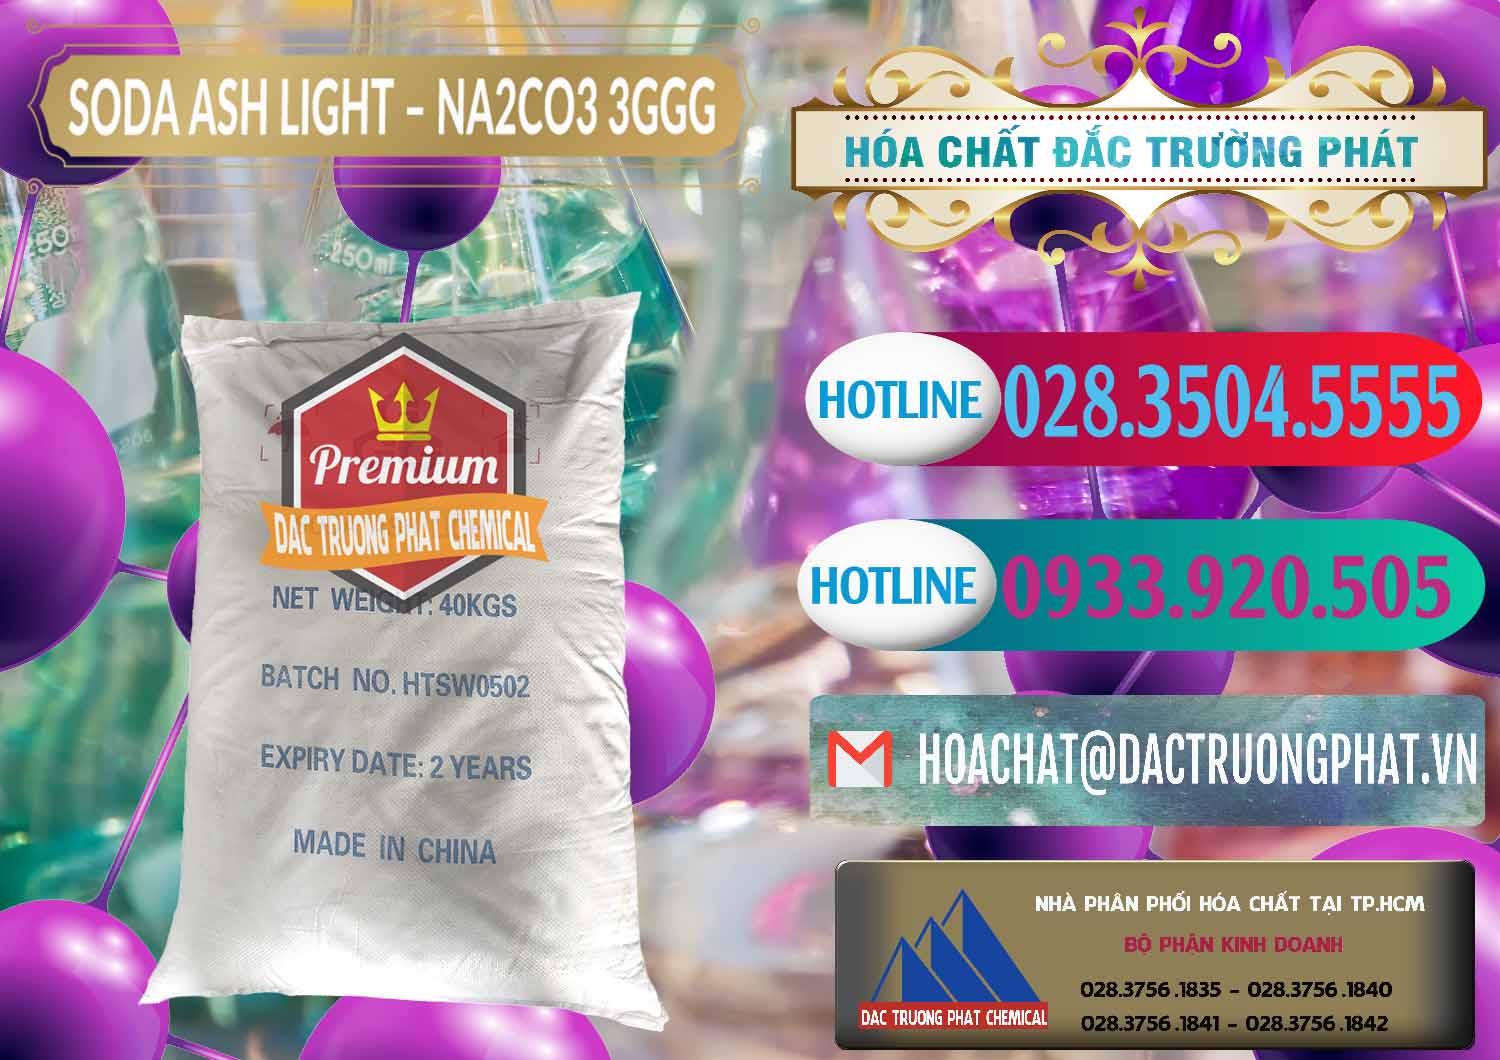 Công ty cung cấp _ bán Soda Ash Light - NA2CO3 3GGG Trung Quốc China - 0124 - Nơi chuyên bán _ phân phối hóa chất tại TP.HCM - truongphat.vn